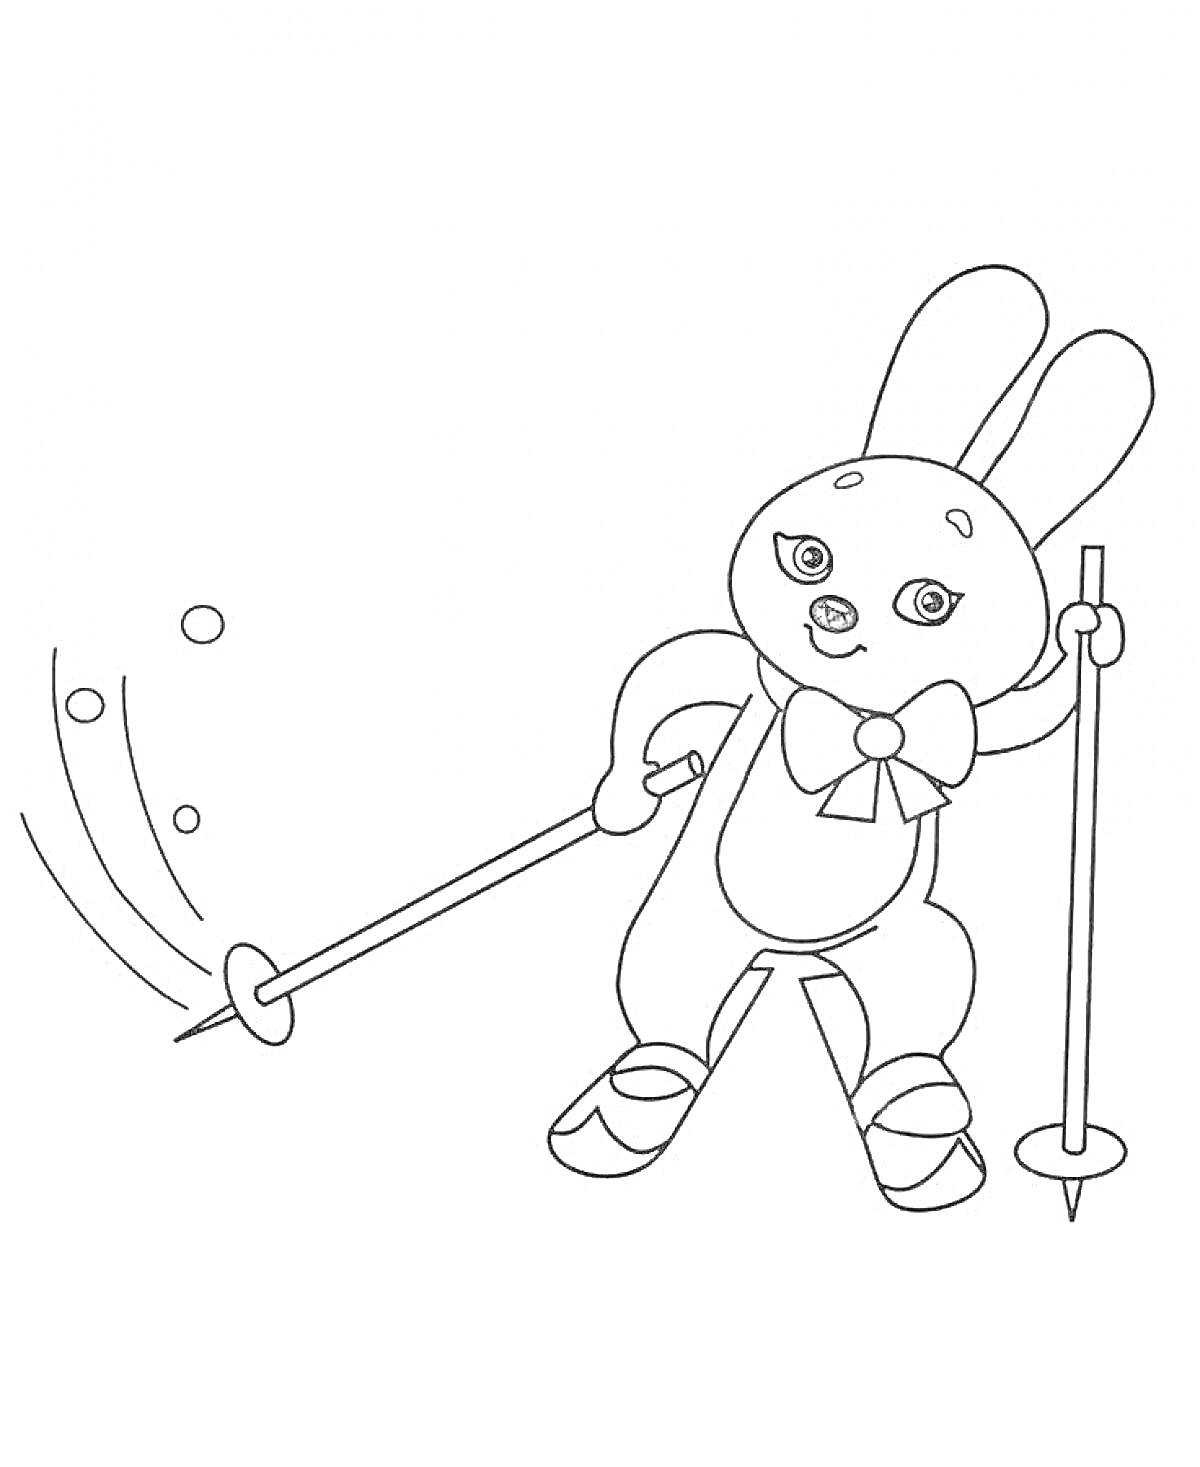 Заяц-лыжник на Олимпийских играх, держащий лыжные палки и катающийся на лыжах